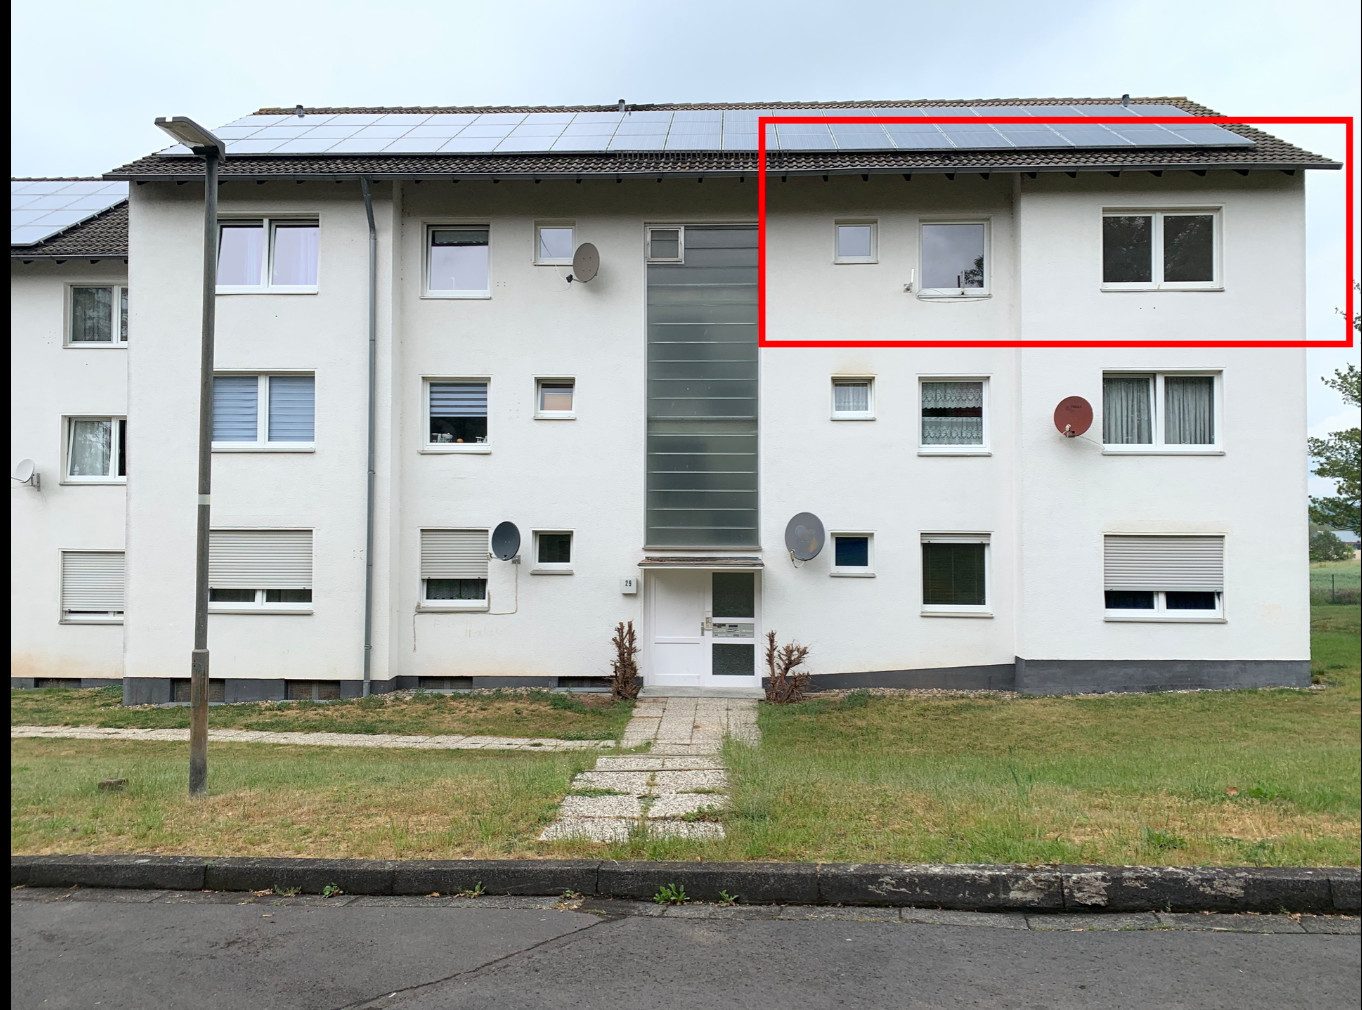 Immobilienangebot - Felsberg - Alle - Gepflegte 4-Zimmerwohnung mit Balkon in Felsberg-Gensungen!